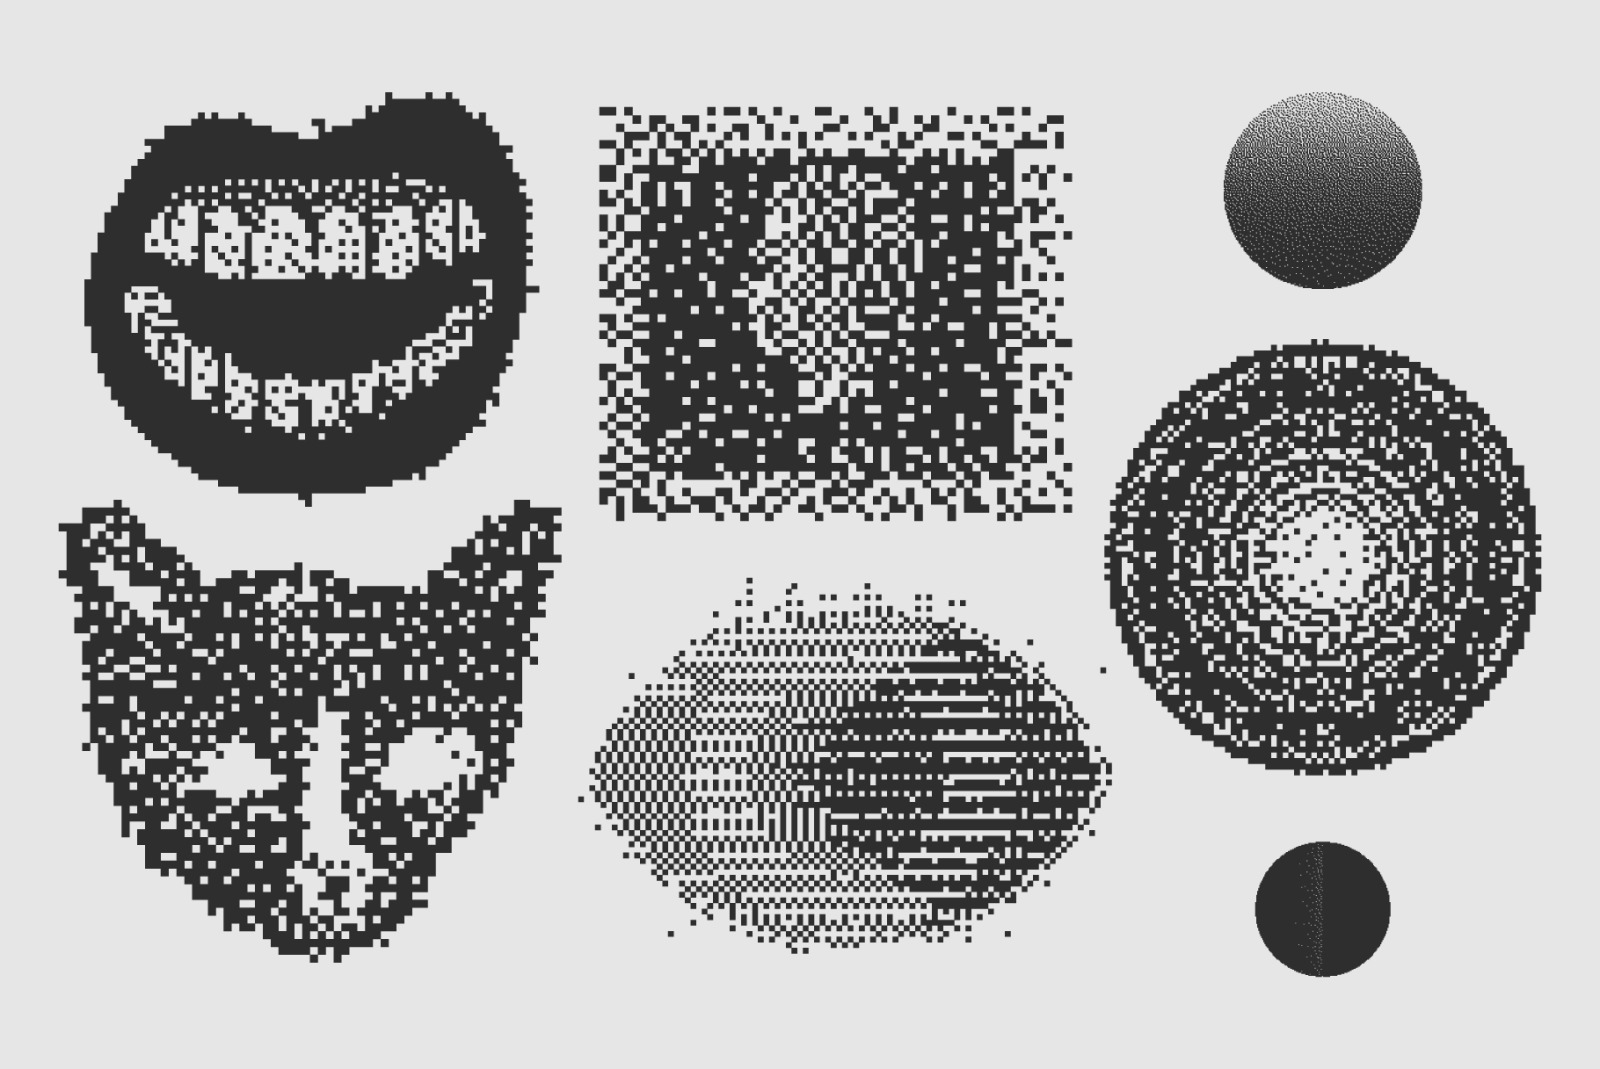 120 个矢量抖动纹理剪贴画形状套装 Vector Dither Textured Clip Art Shapes Set插图4